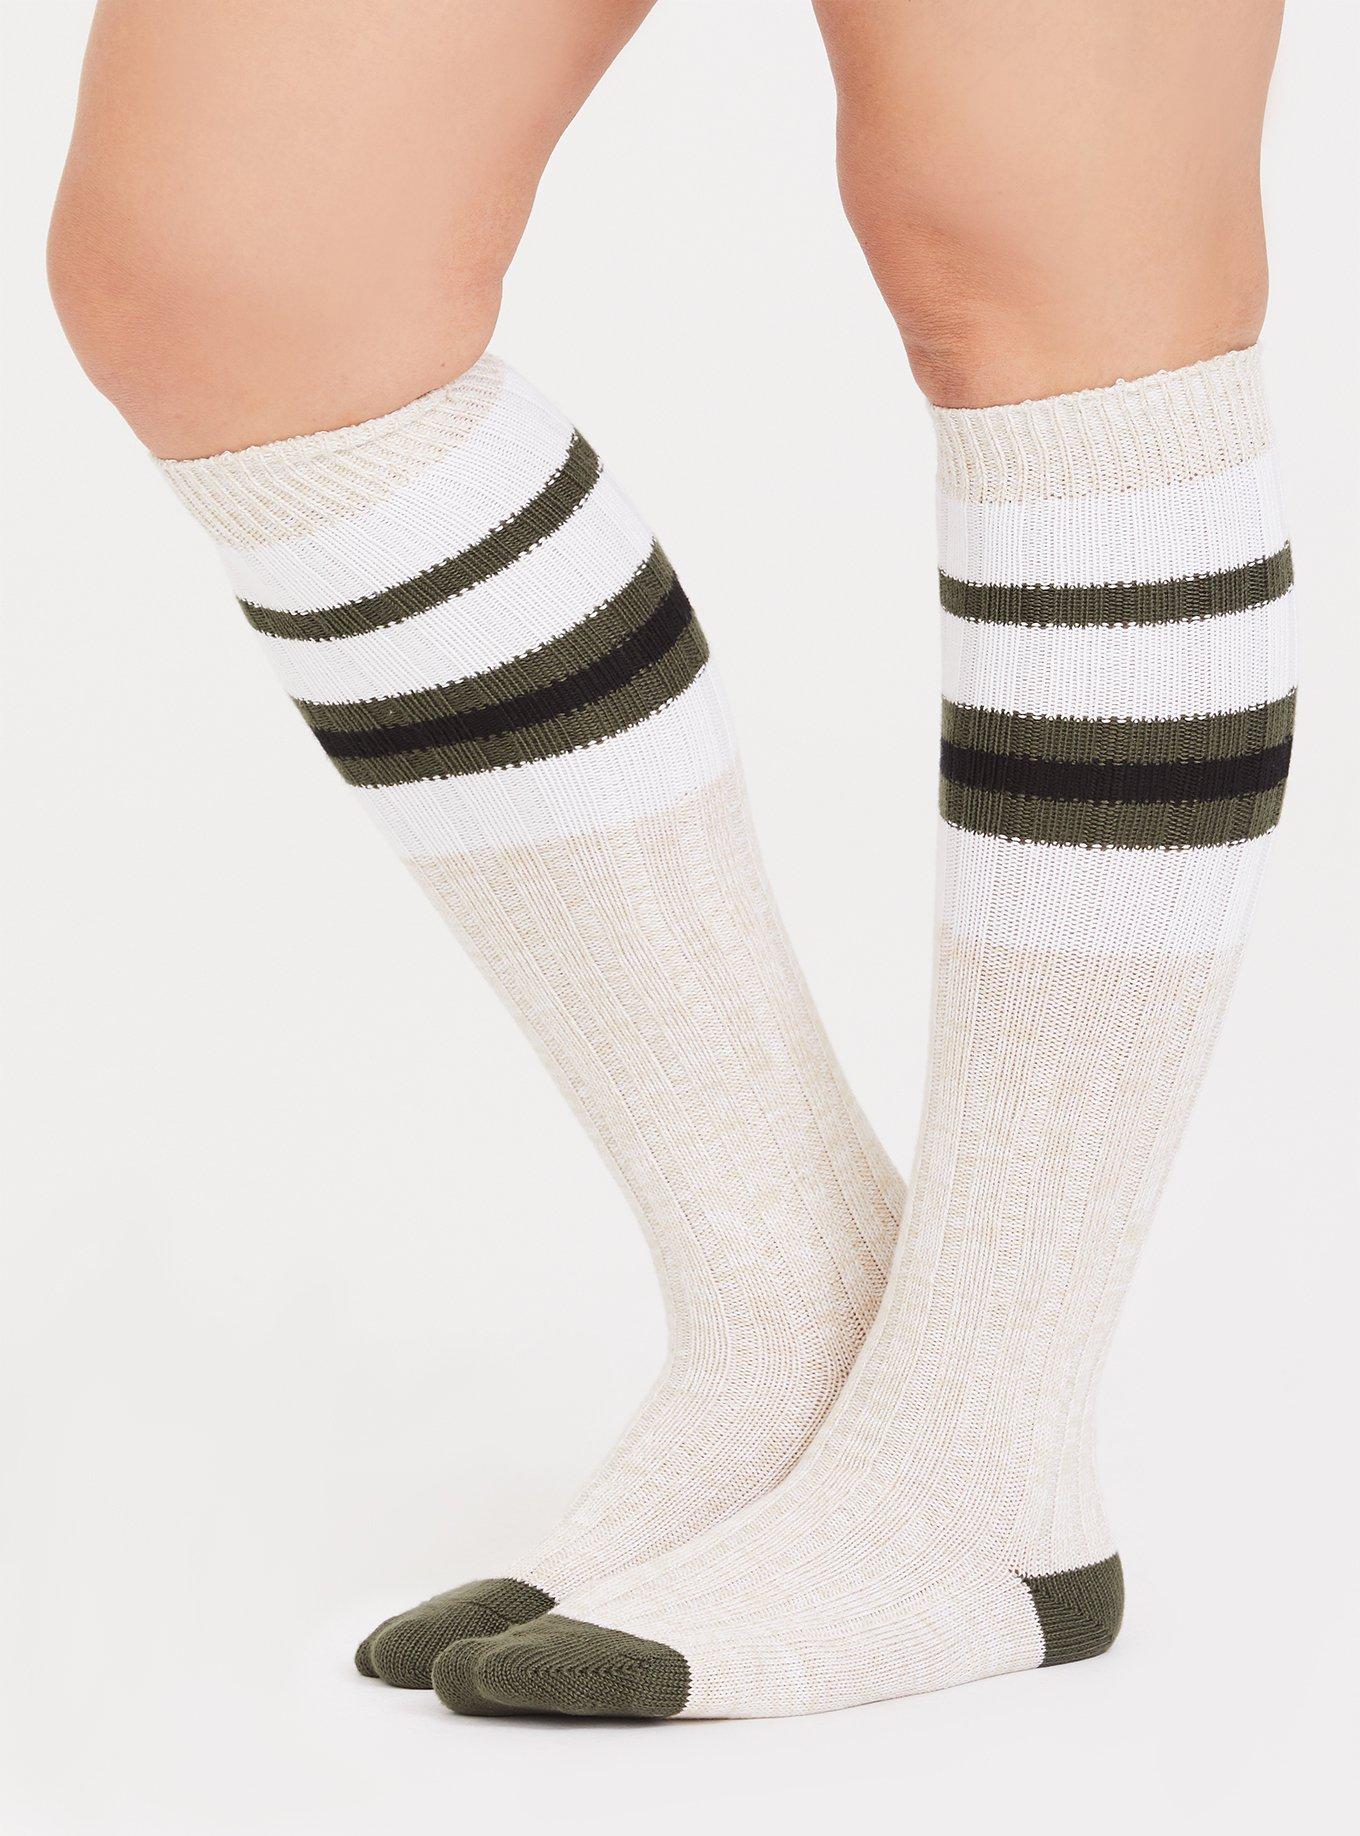 Plus Size - Butter Soft Knee-High Sock - Torrid